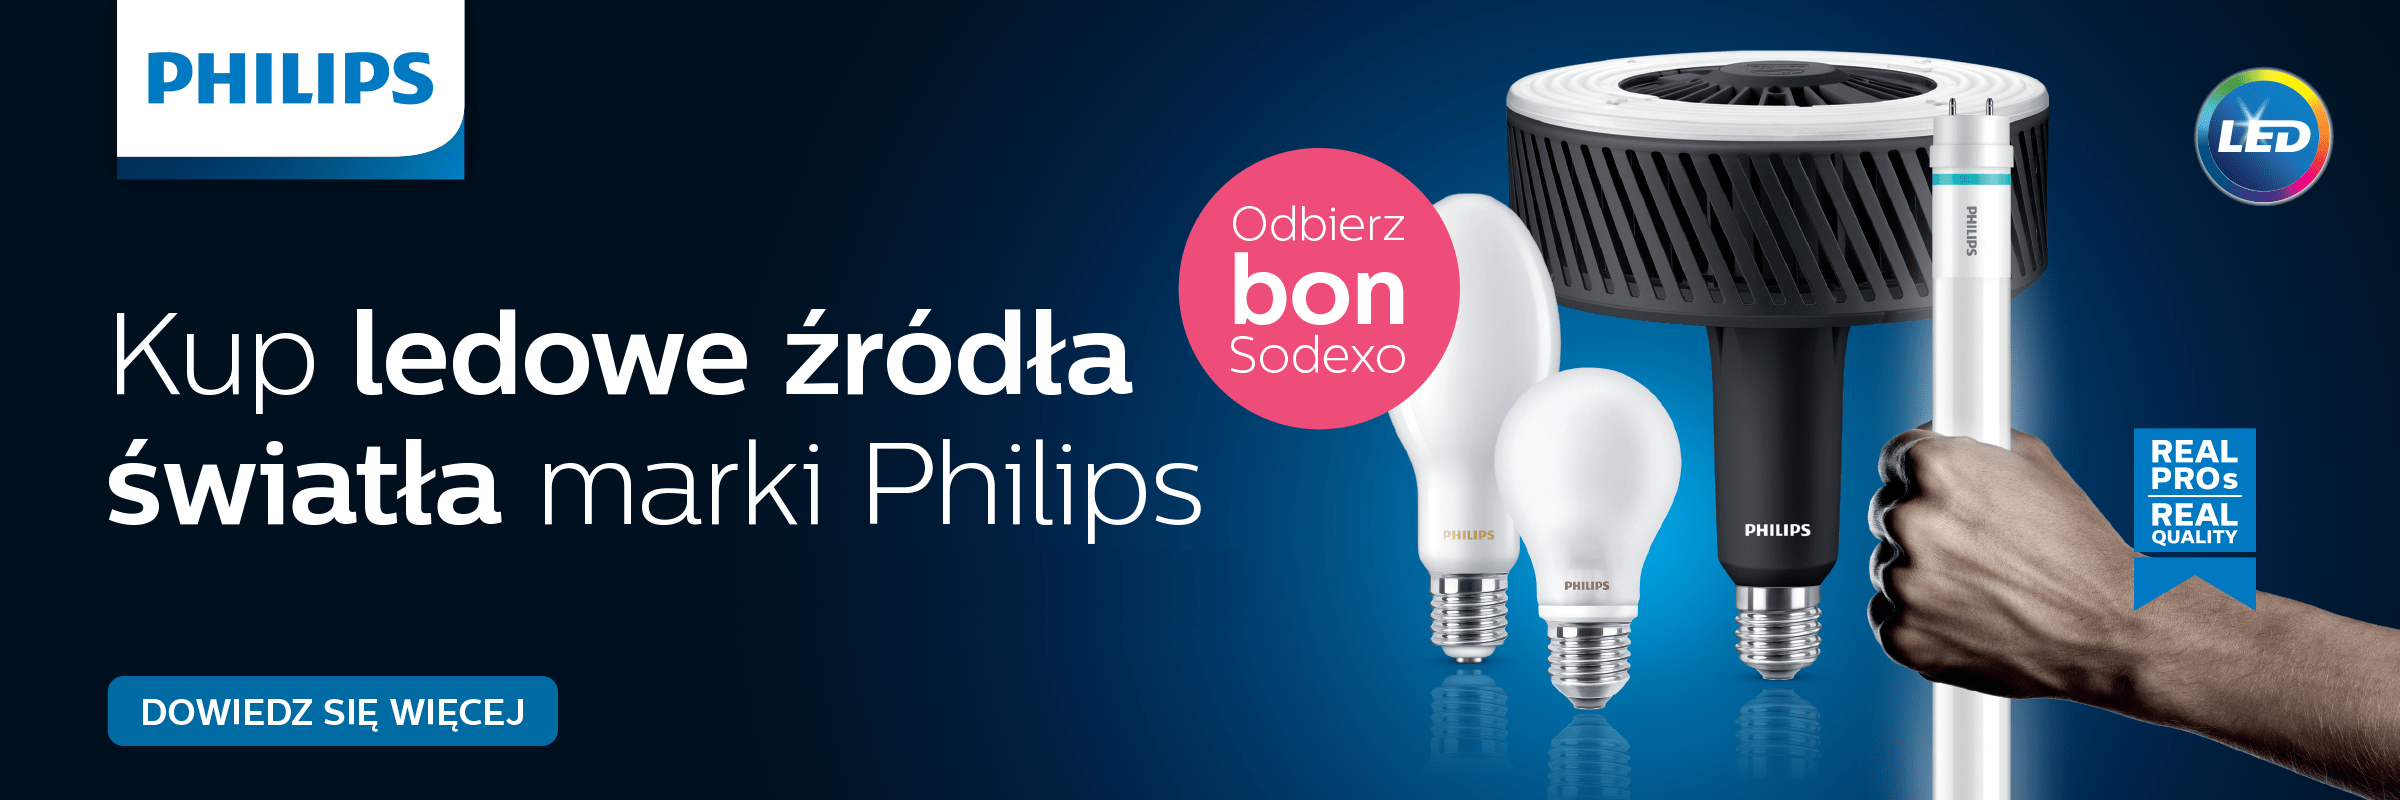 Źródła LED Philips - Promocja z bonami Sodexo